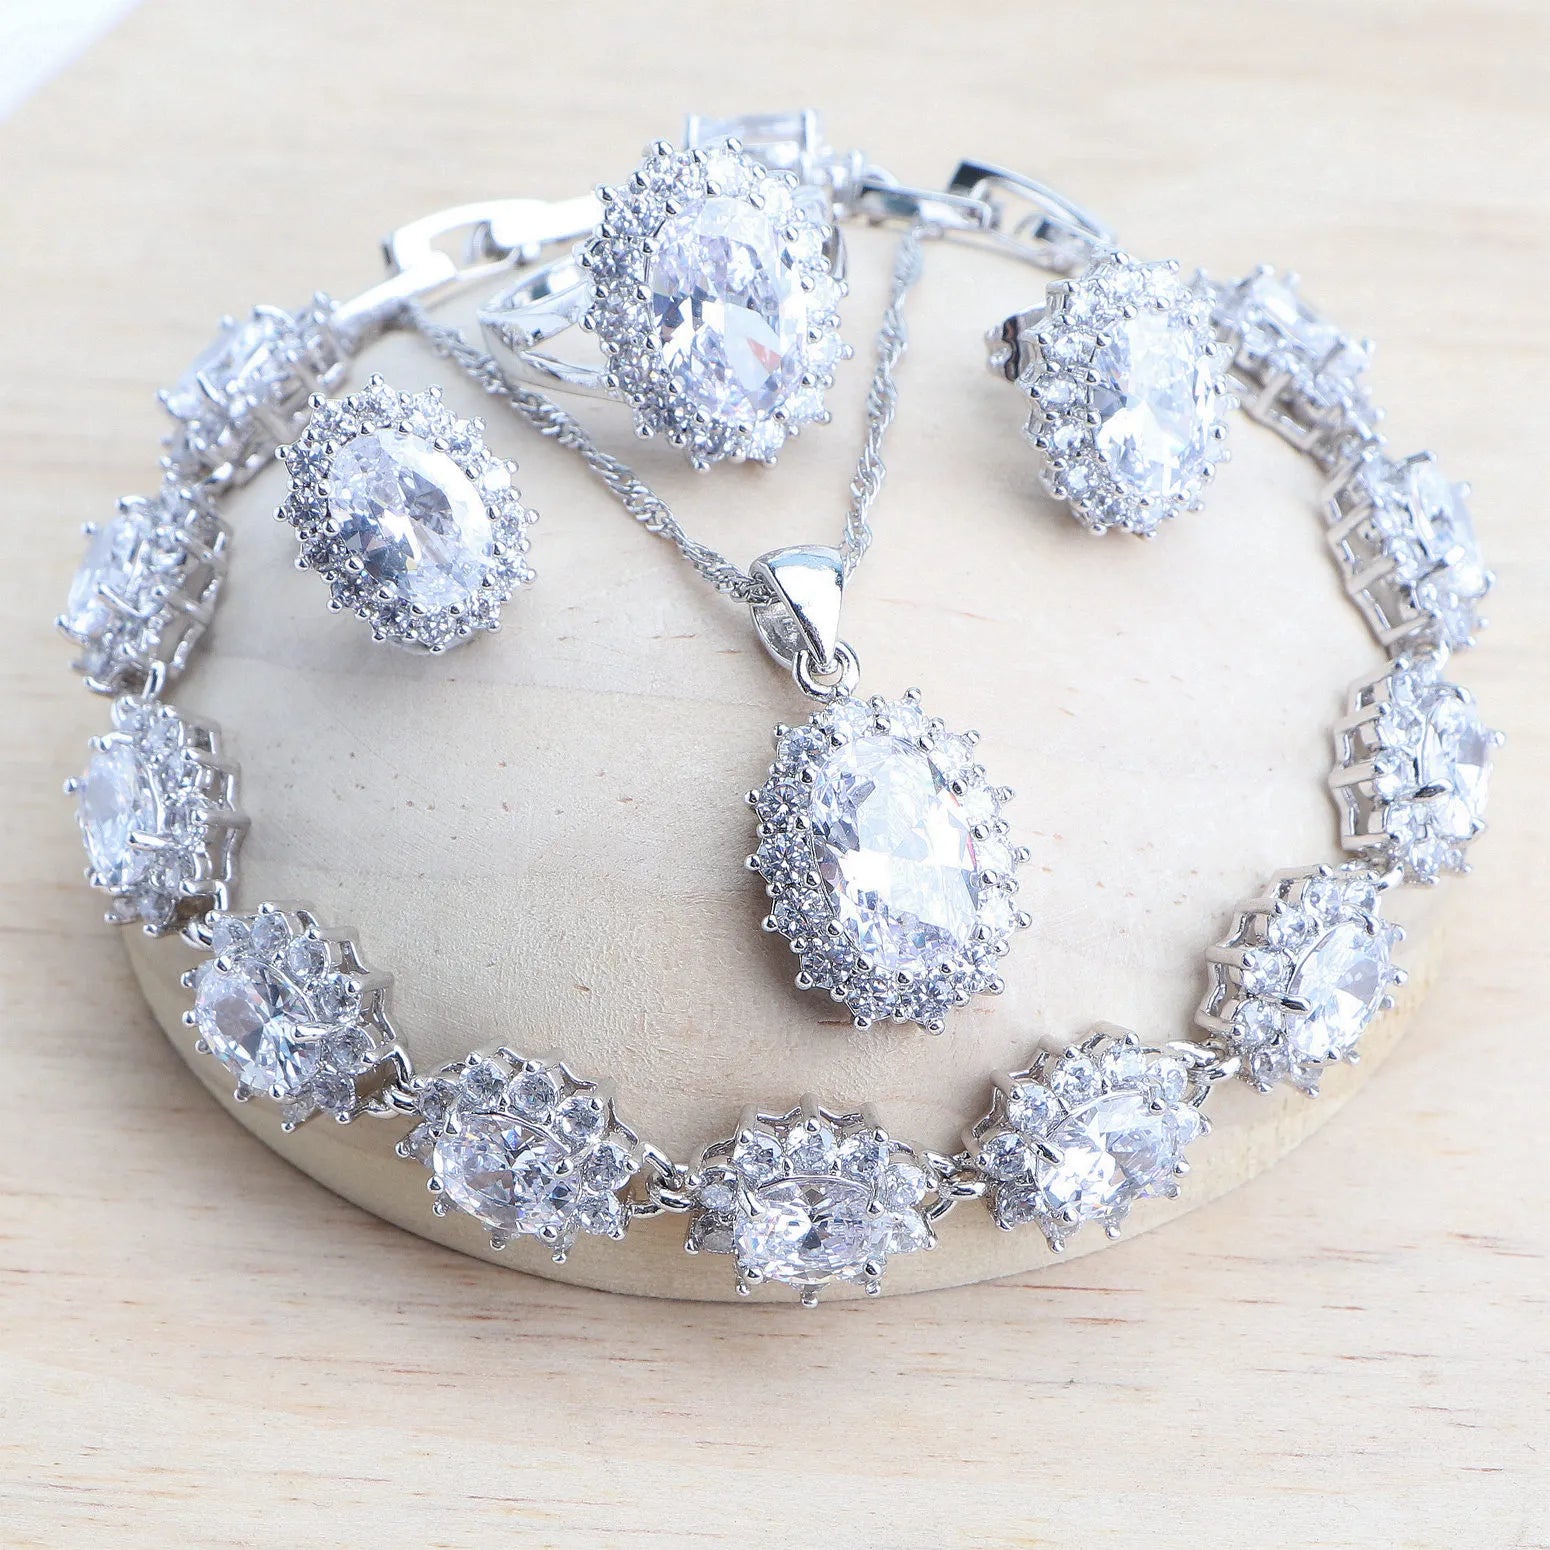 Conjuntos de joyería de plata 925 para mujer, circonita azul, joyería fina, pendientes, anillos, pulseras, colgante, regalos, Naviadad